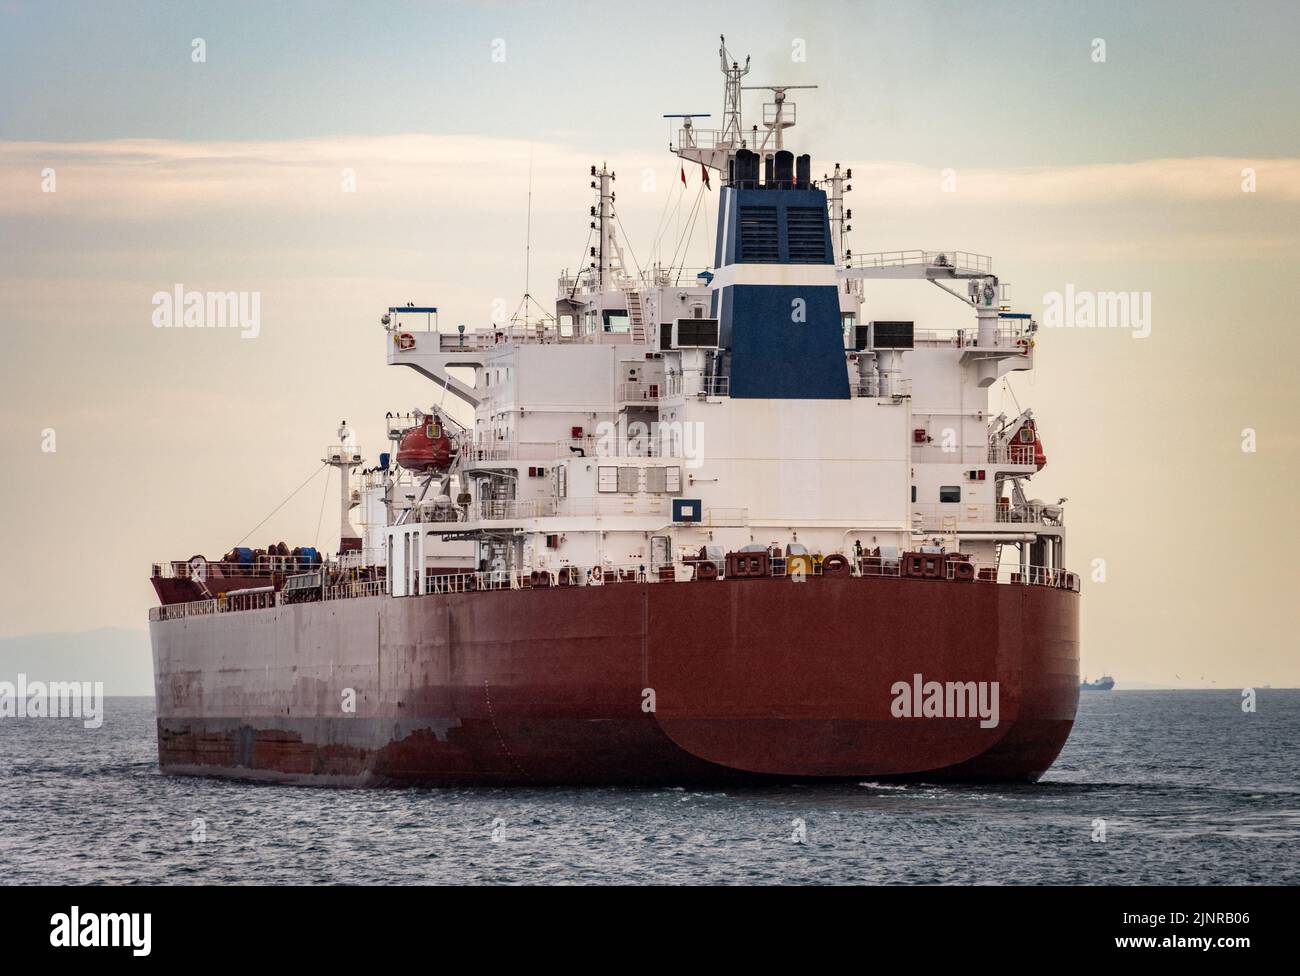 Cargo ship on the sea Stock Photo